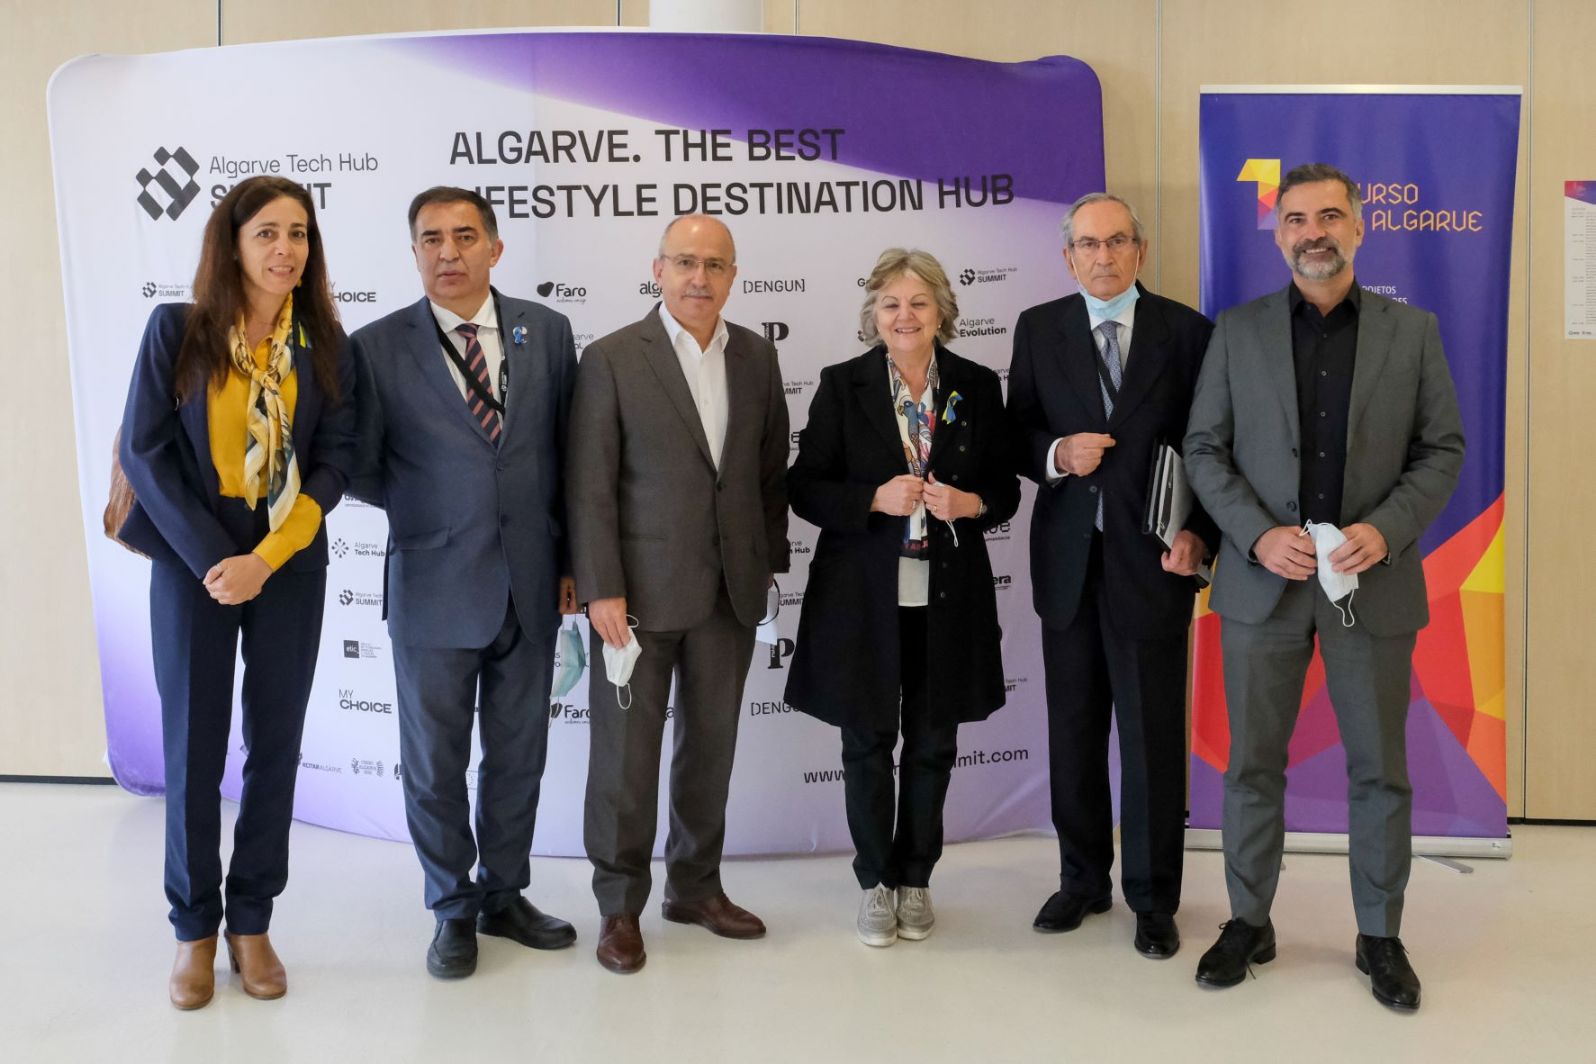 Conferência Internacional sobre Inovação e Turismo, no âmbito do projecto Inova Algarve 2.0